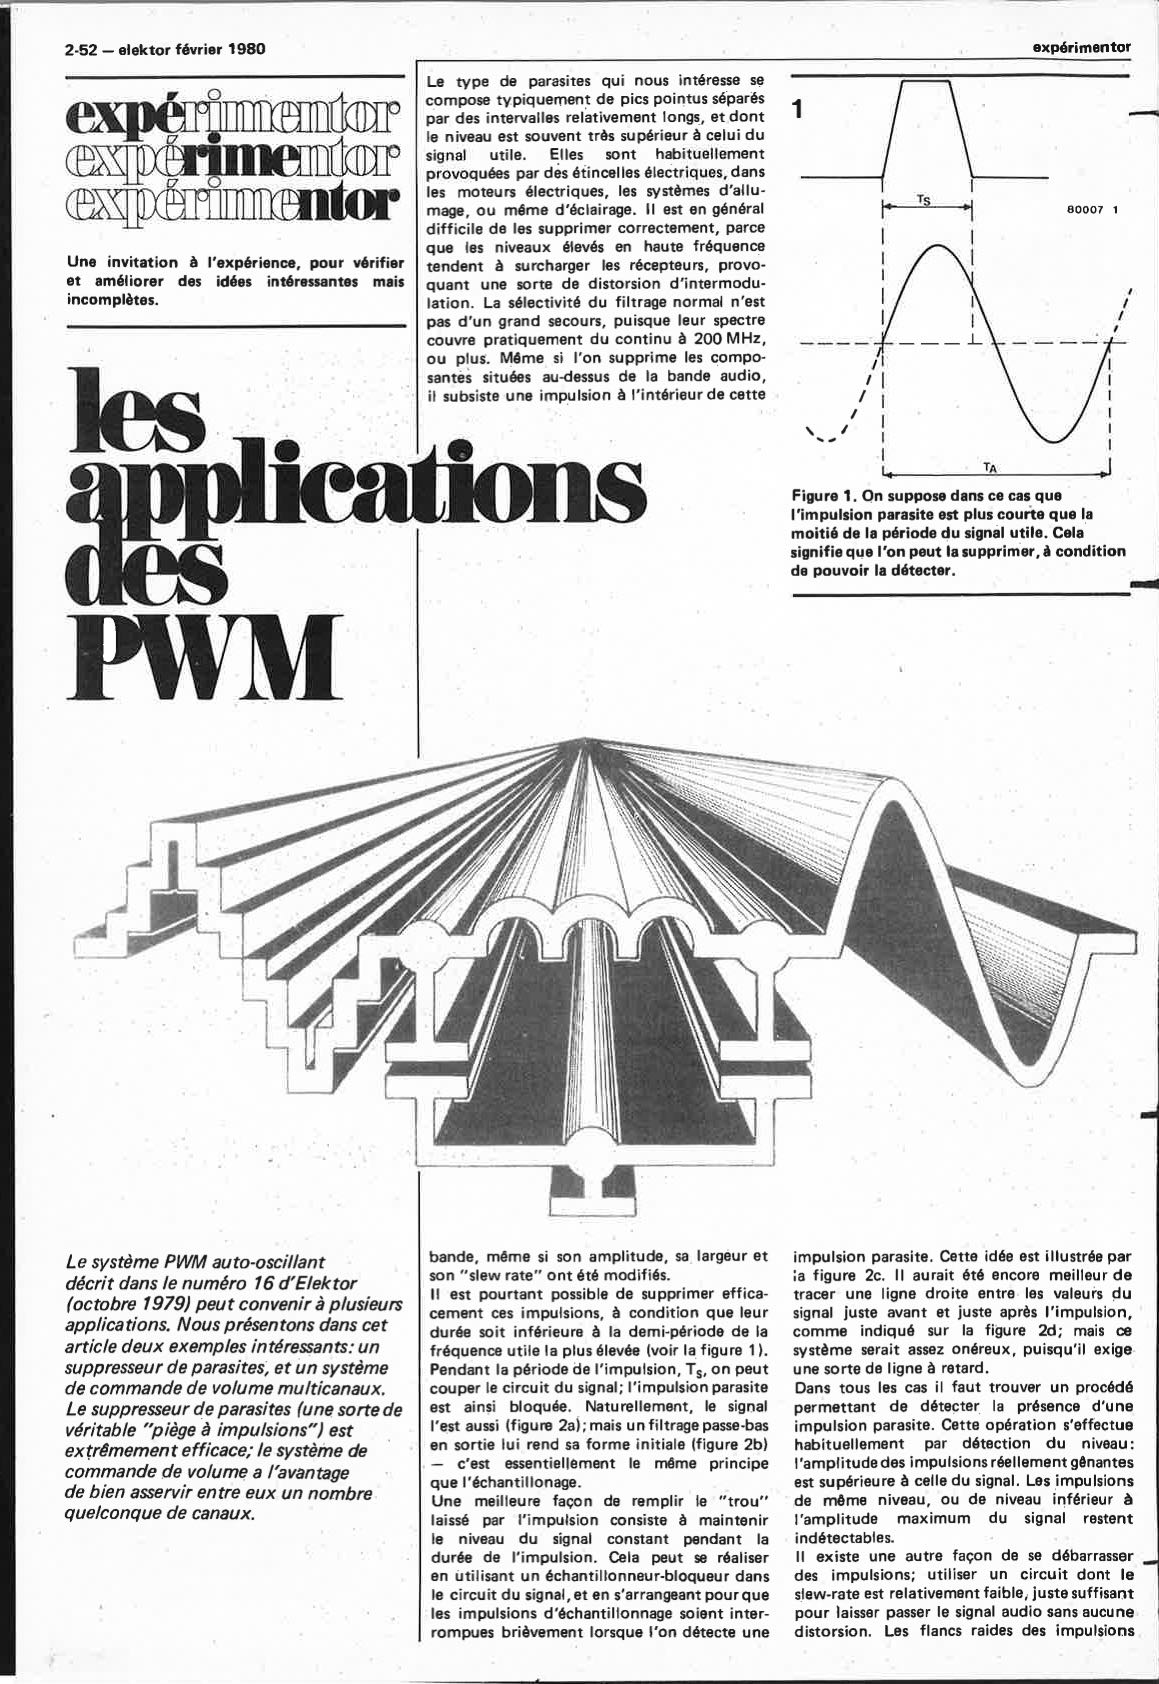 Les applications des PWM